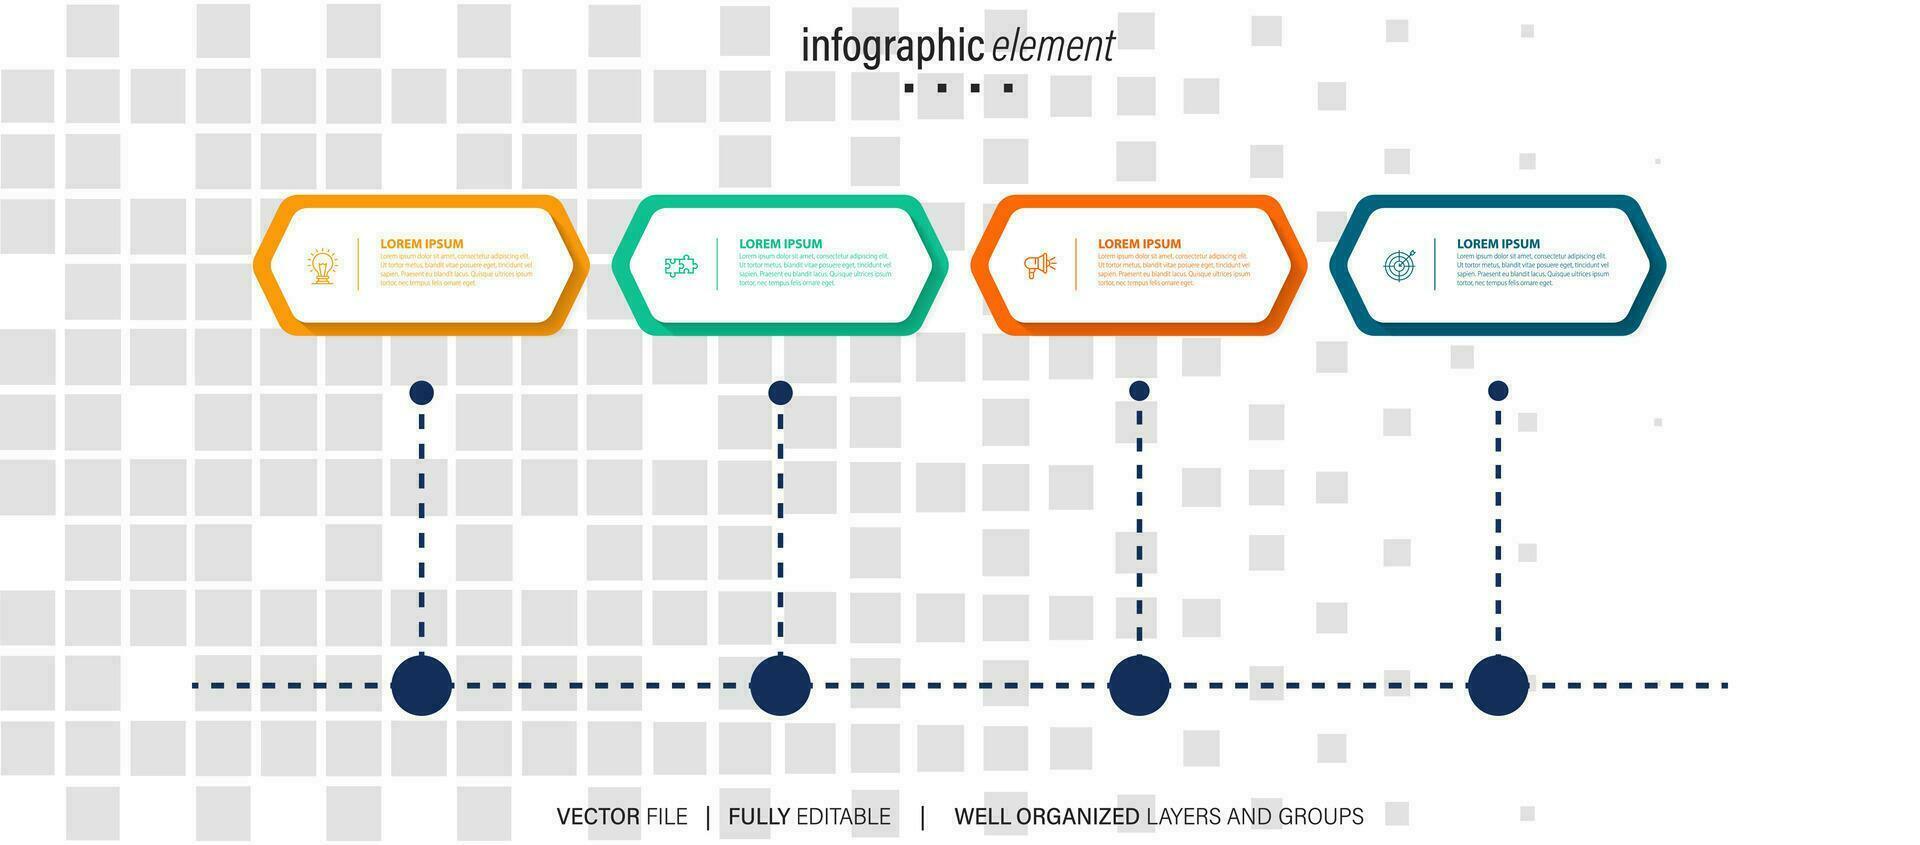 Infografik Design Vorlage. Vektor Illustration.